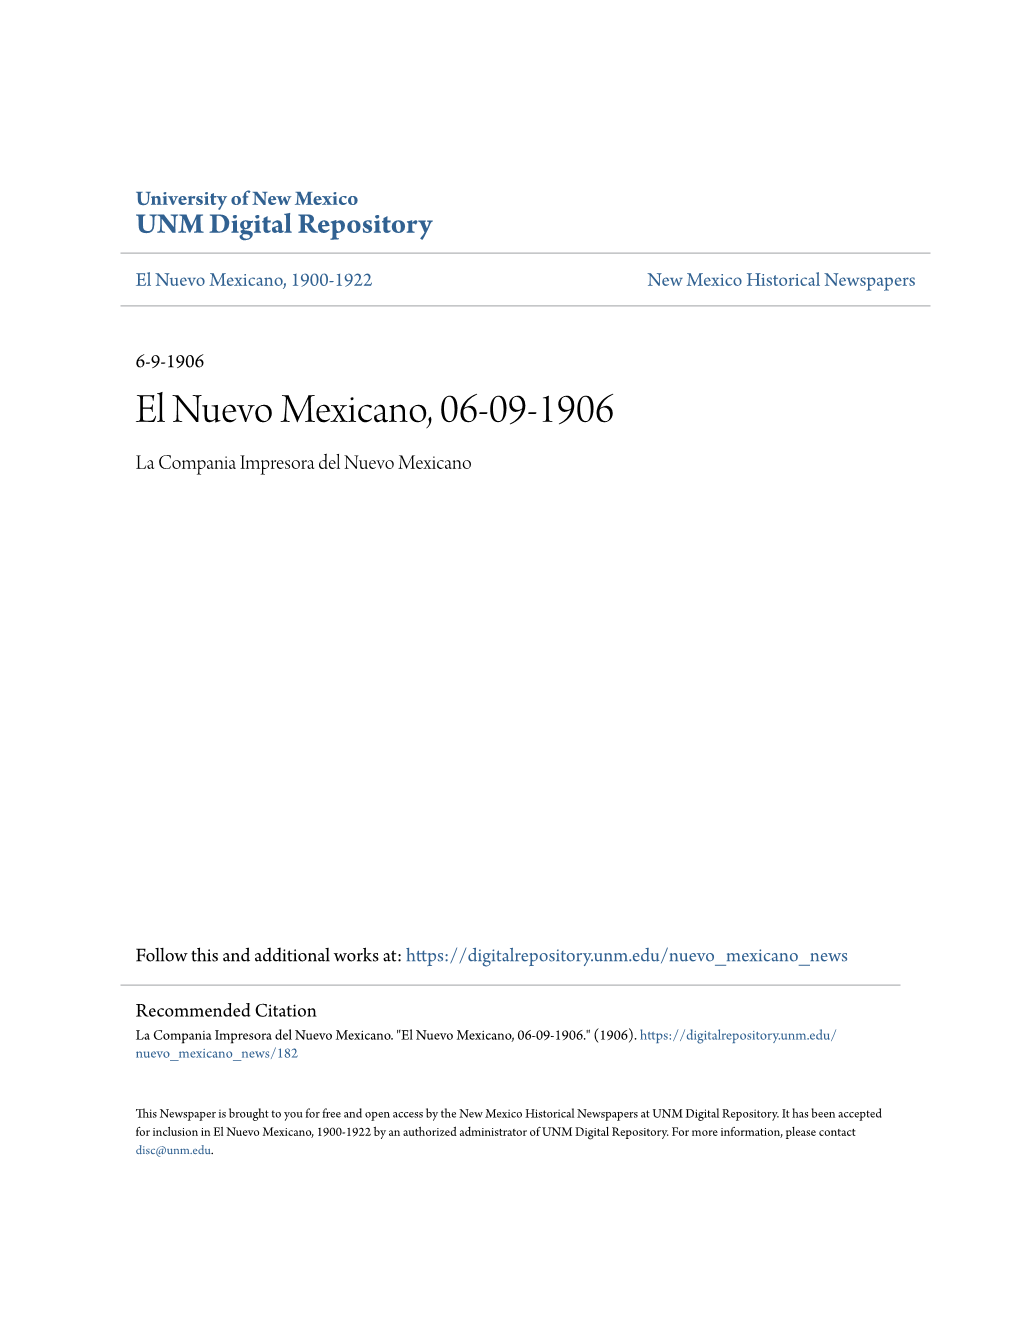 El Nuevo Mexicano, 06-09-1906 La Compania Impresora Del Nuevo Mexicano